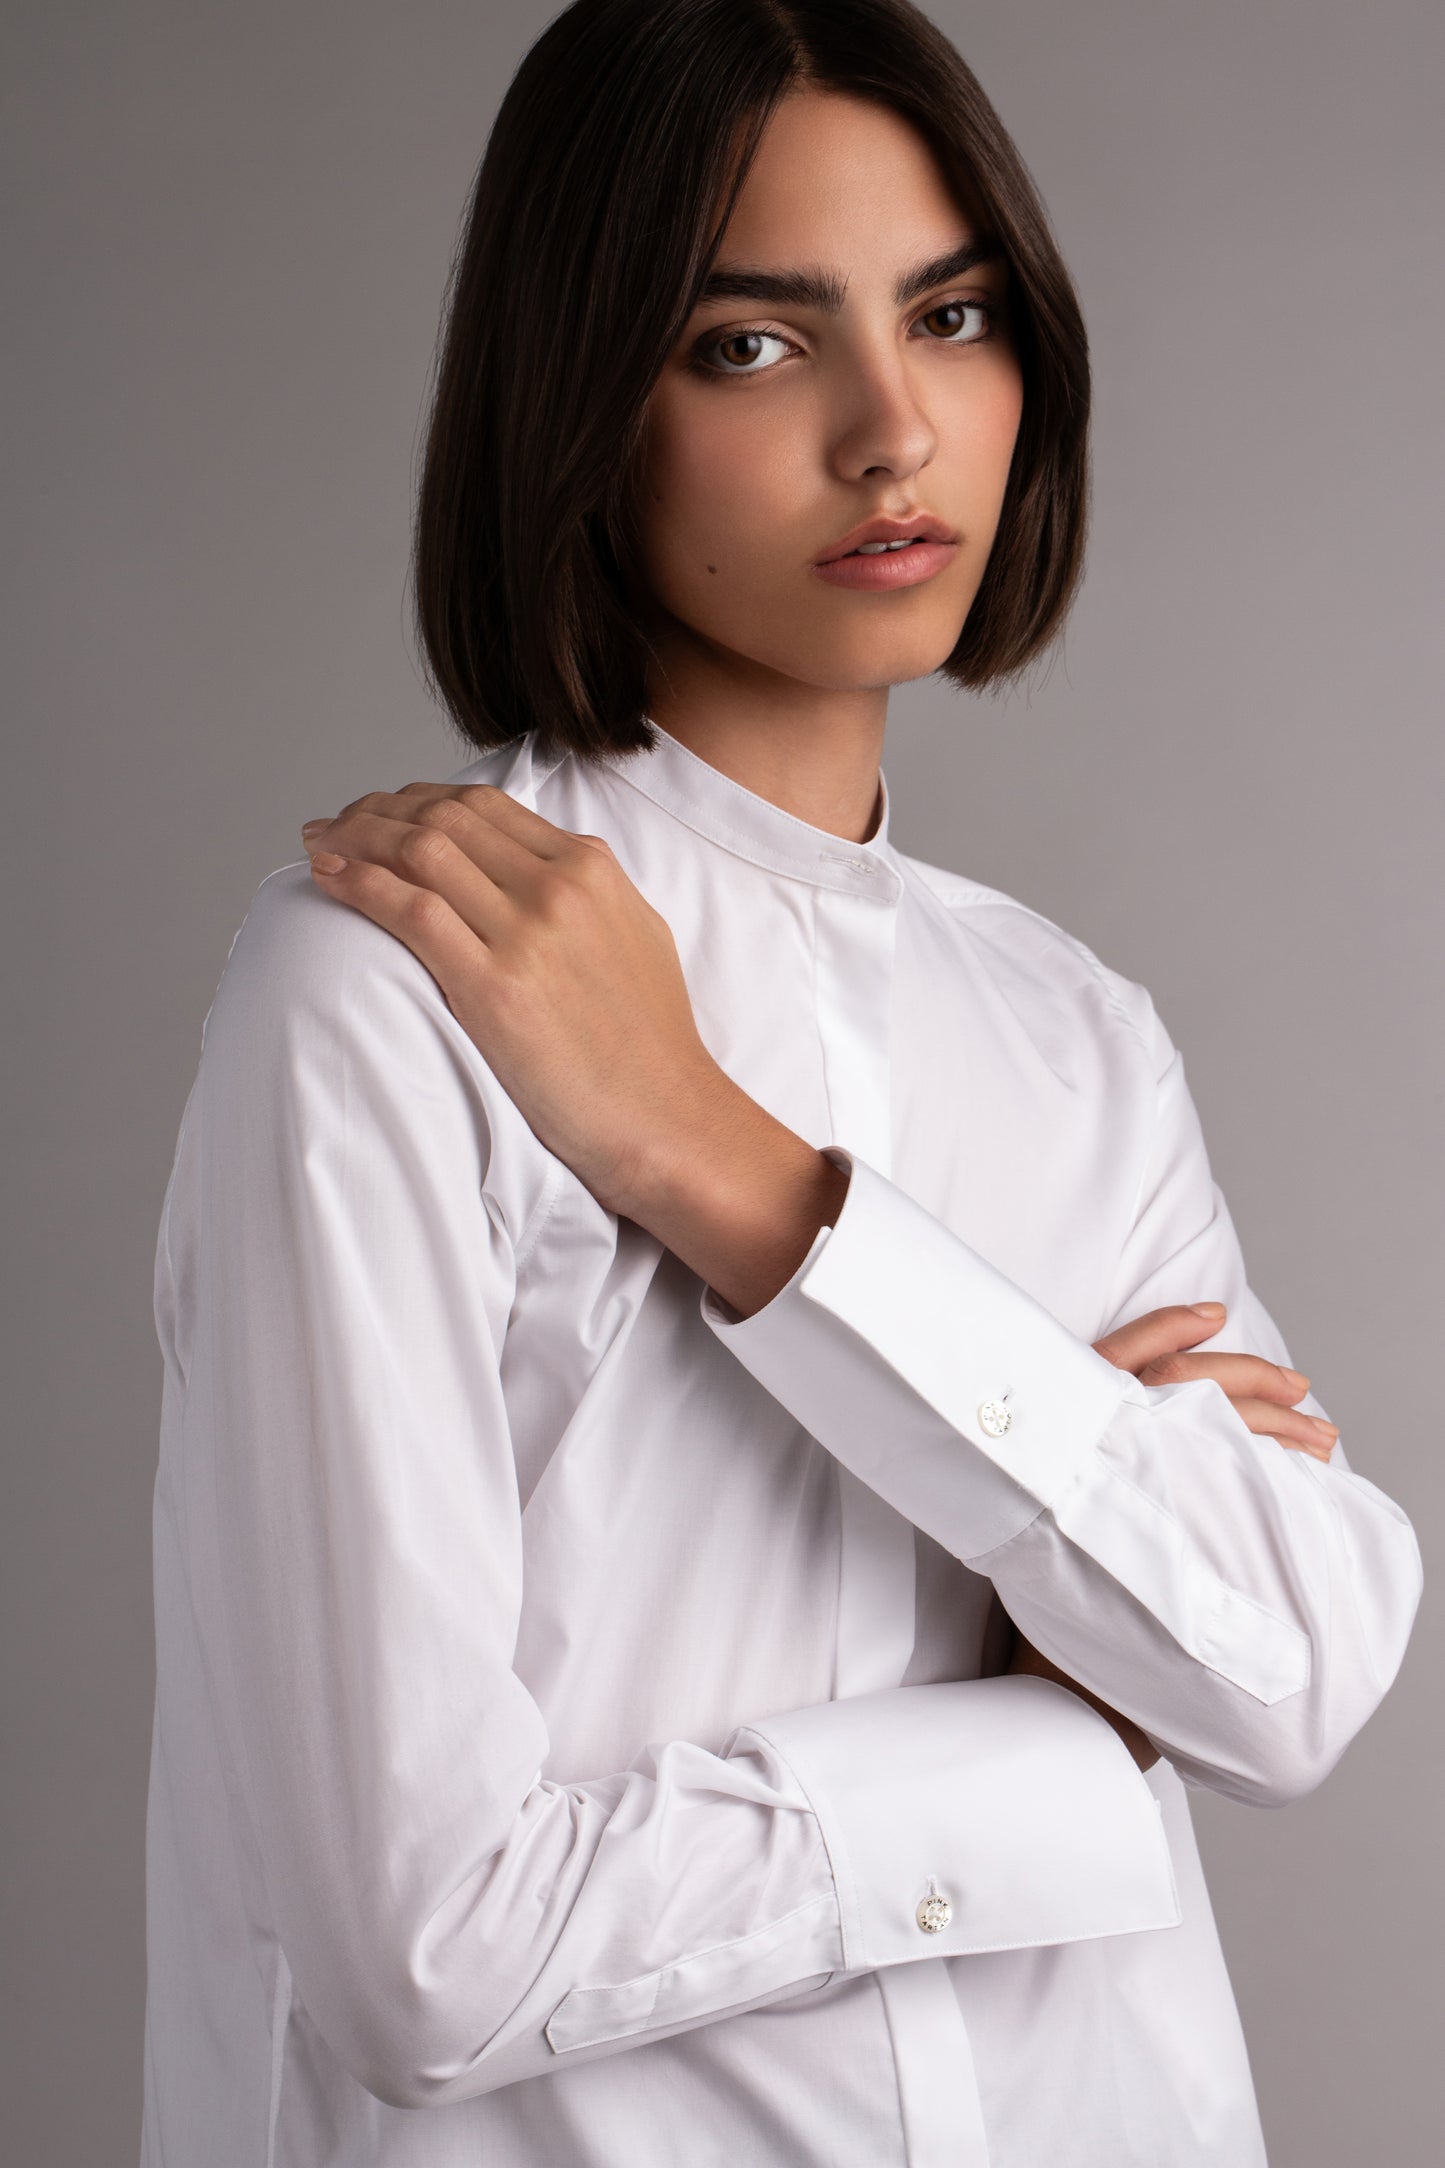 Cutaway Tunic Shirt - White